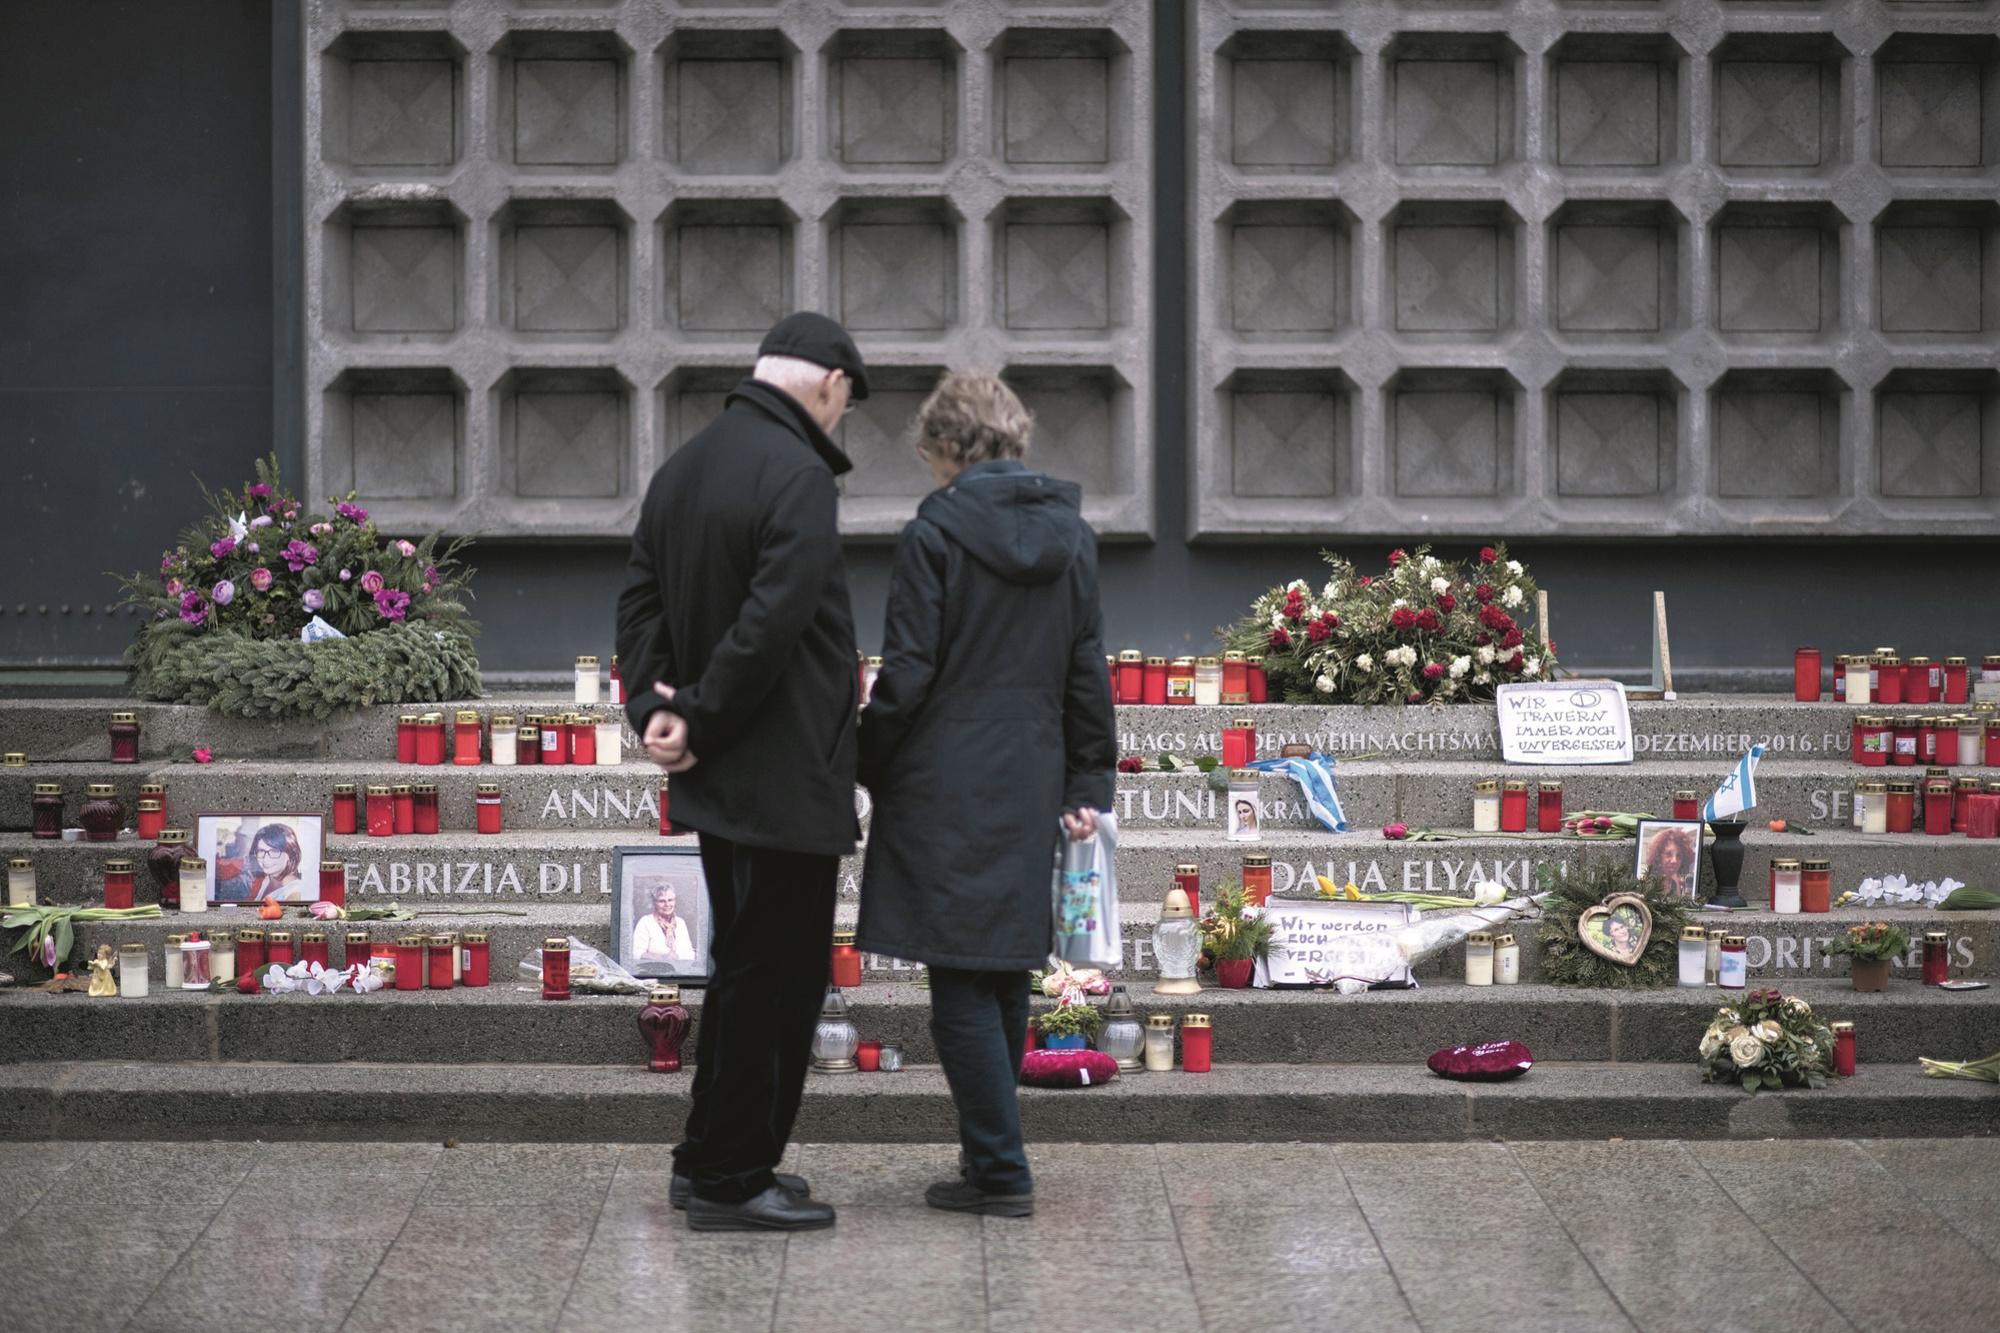 Le mémorial aux victimes de l'attentat du marché de Noël de 2016, dont les douze noms sont gravés sur les marches de l'église du Souvenir de Berlin.